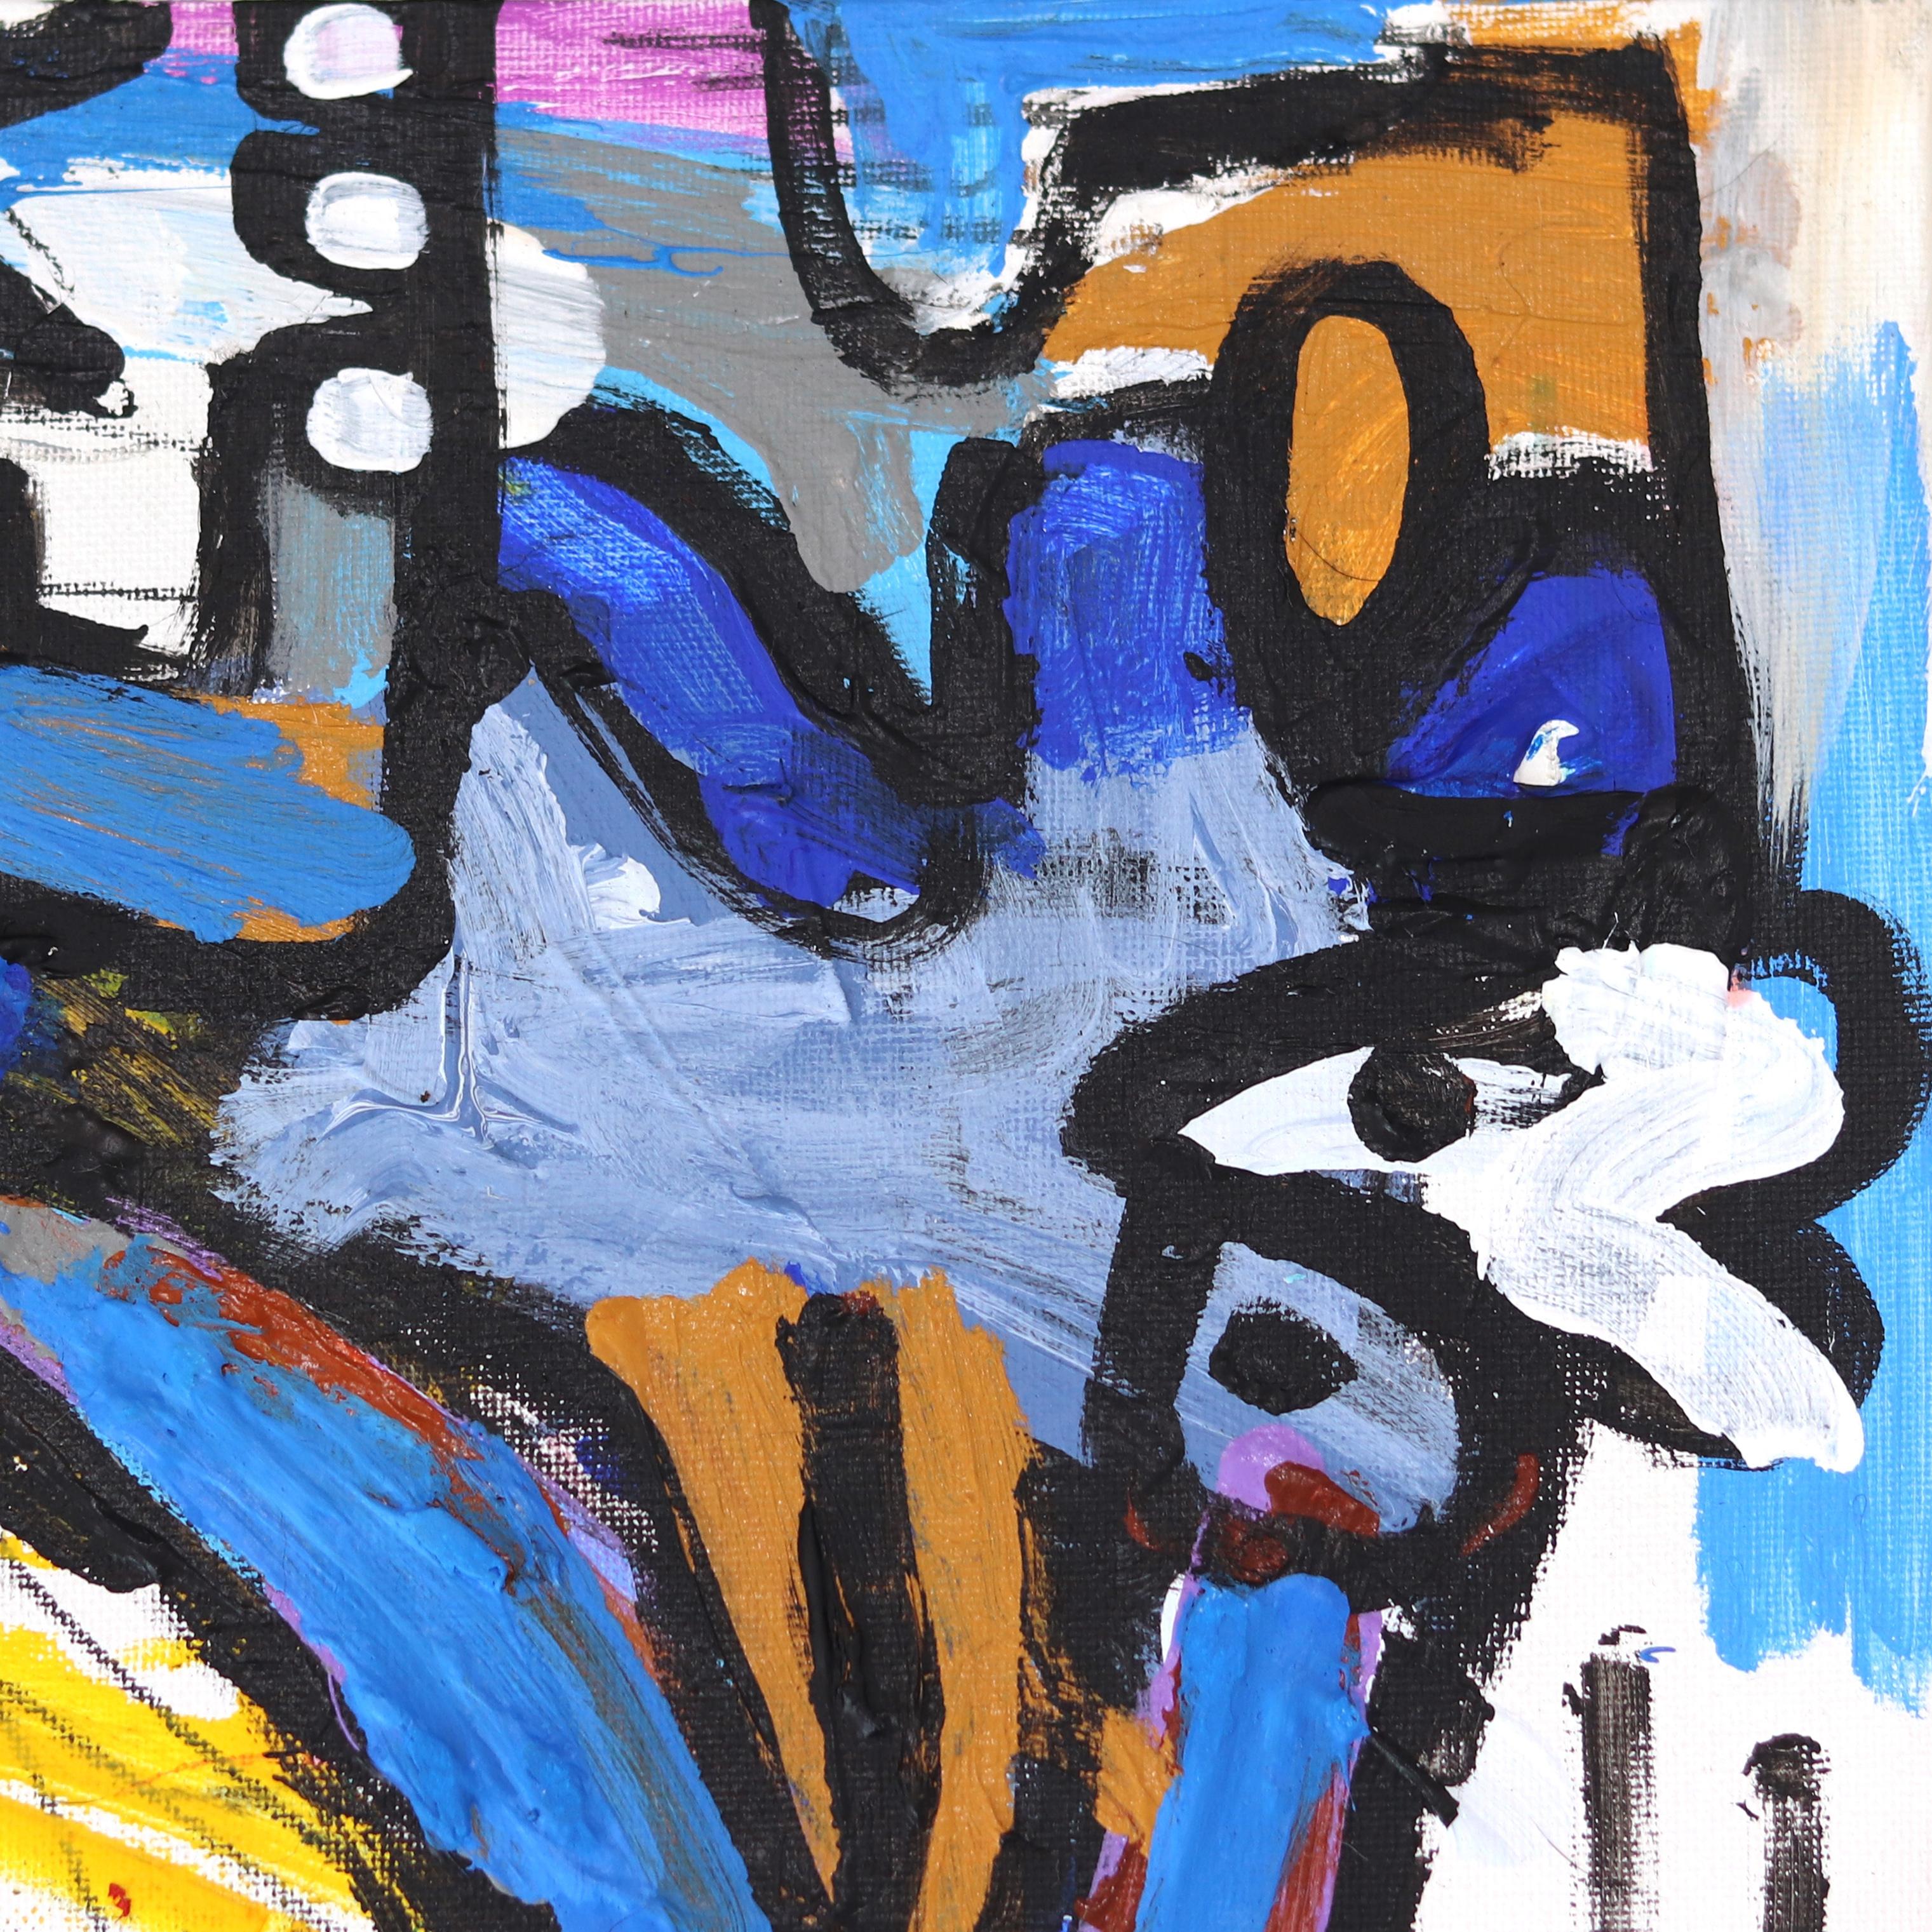 In Arms - Original Colorful Mixed Media - Art abstrait vibrant et spontané - Pop Art Painting par Jonas Fisch